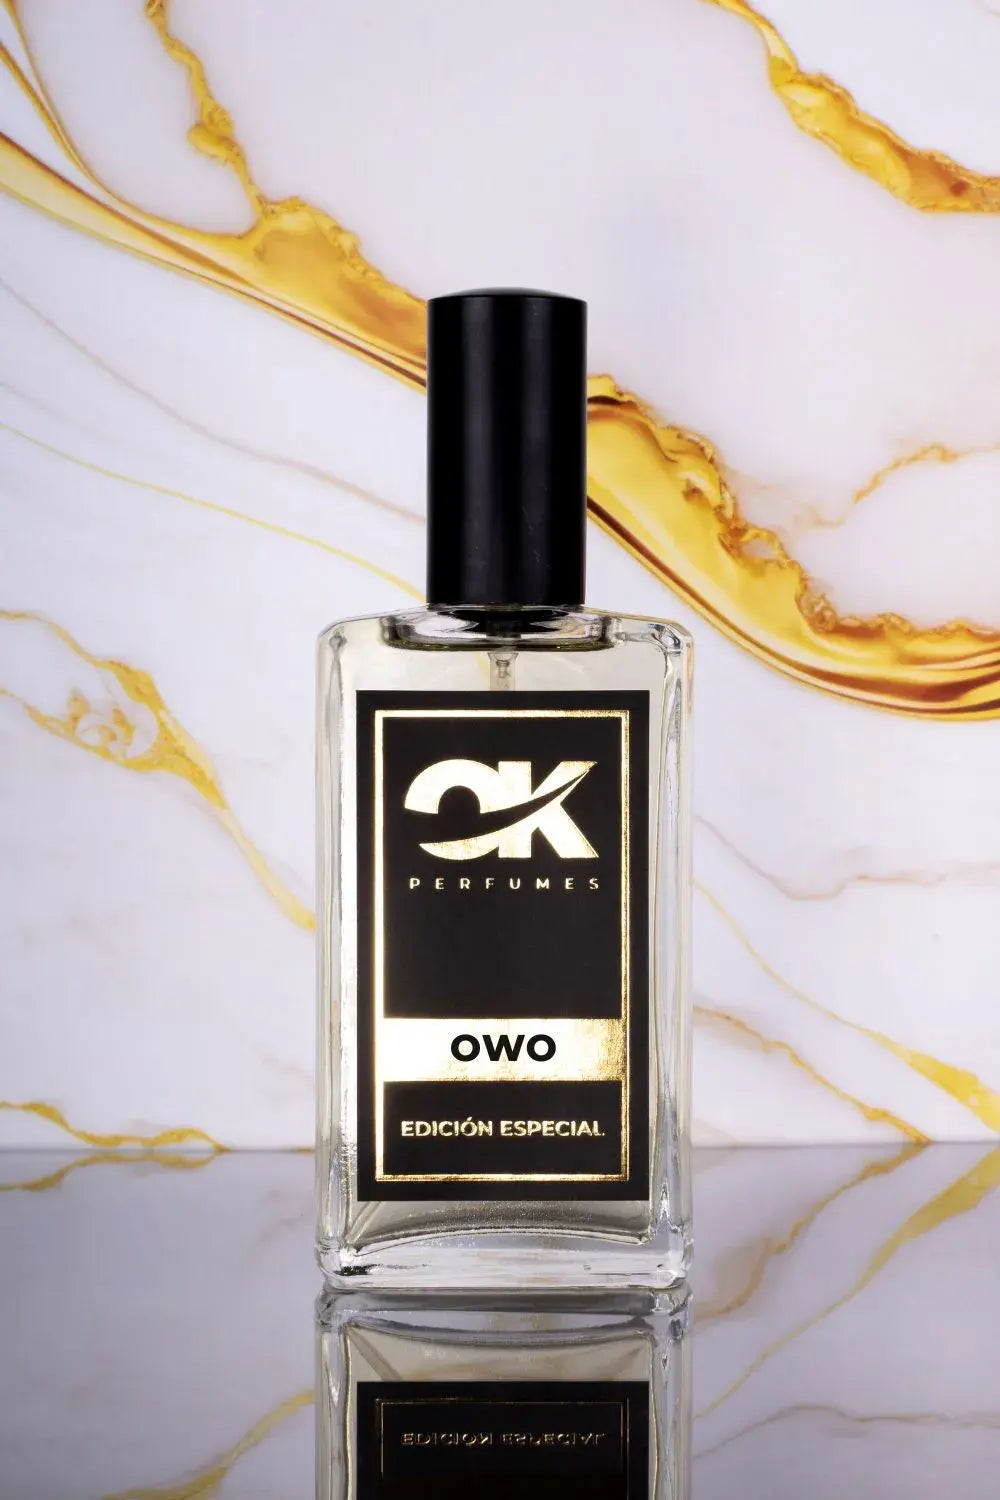 OWO - Recuerda a Oud Wood de Tom Ford